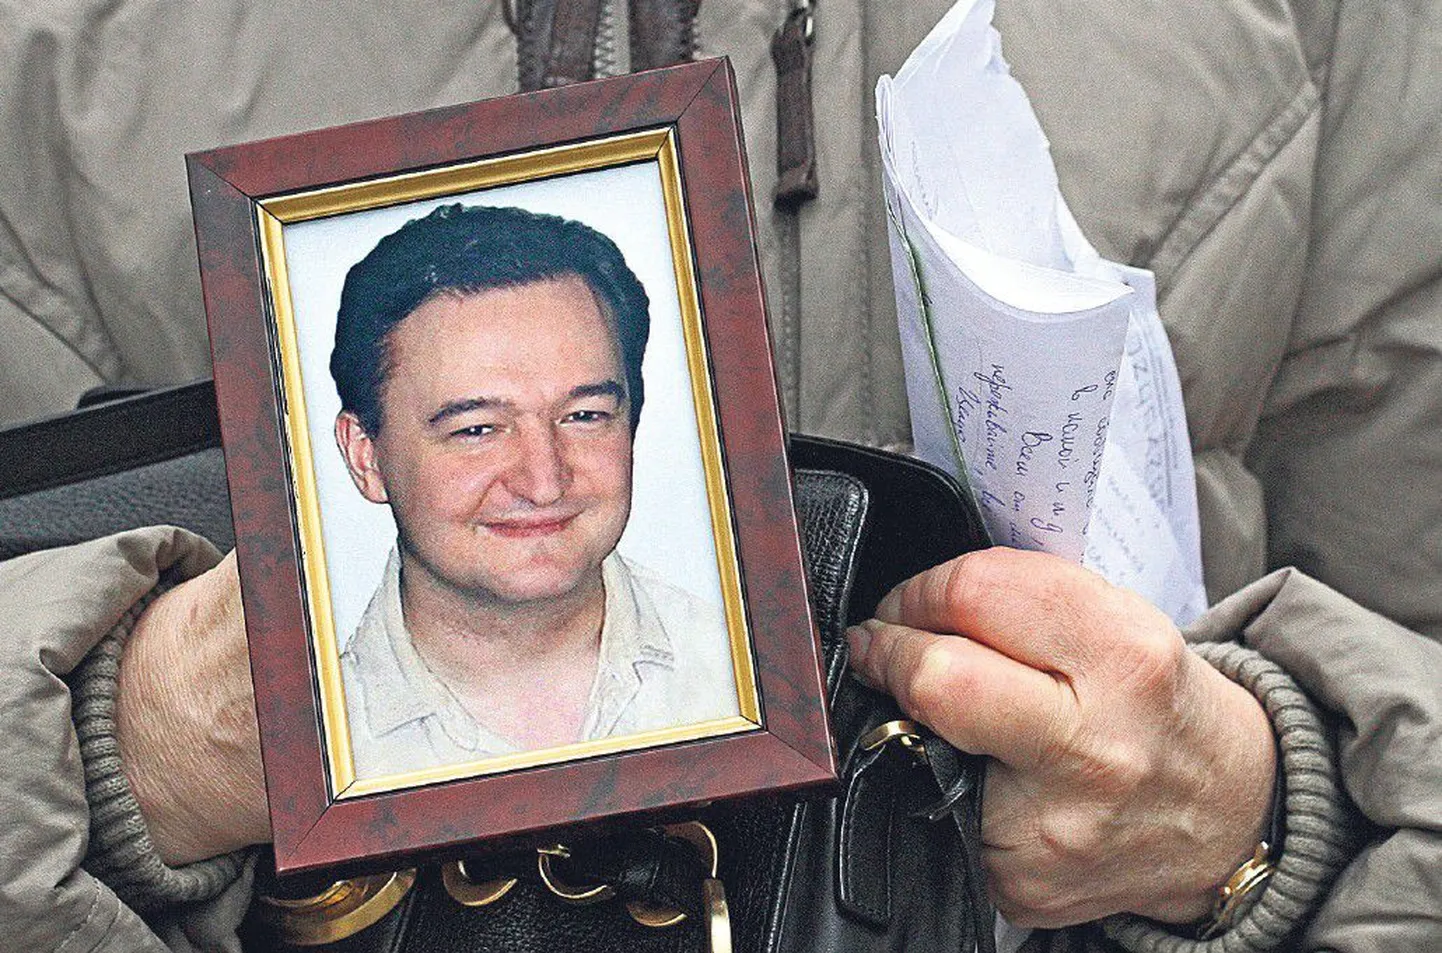 Юрист инвестиционного фонда Hermitage Сергей Магнитский скончался в московской тюрьме 16 ноября 2009 года.